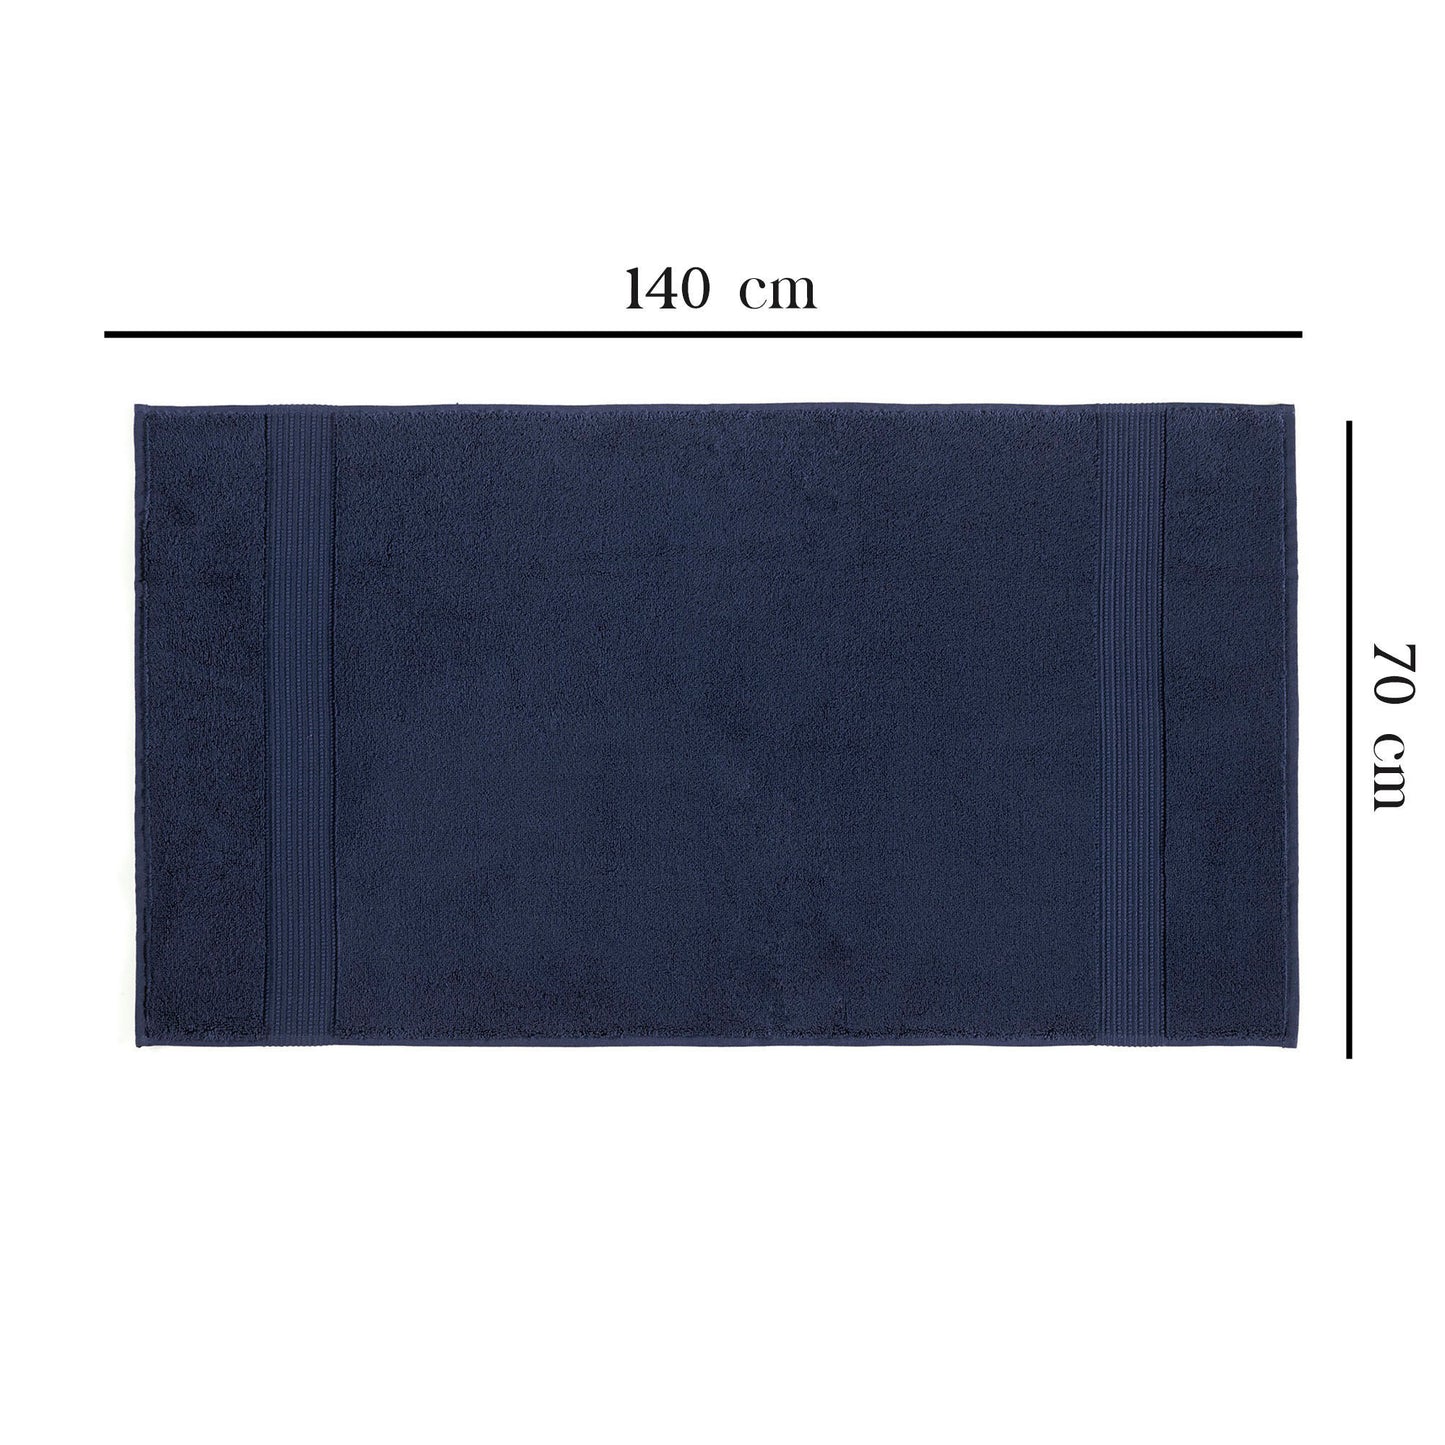 Håndklæde -  Chicago Bath (70 x 140) - Mørkeblå